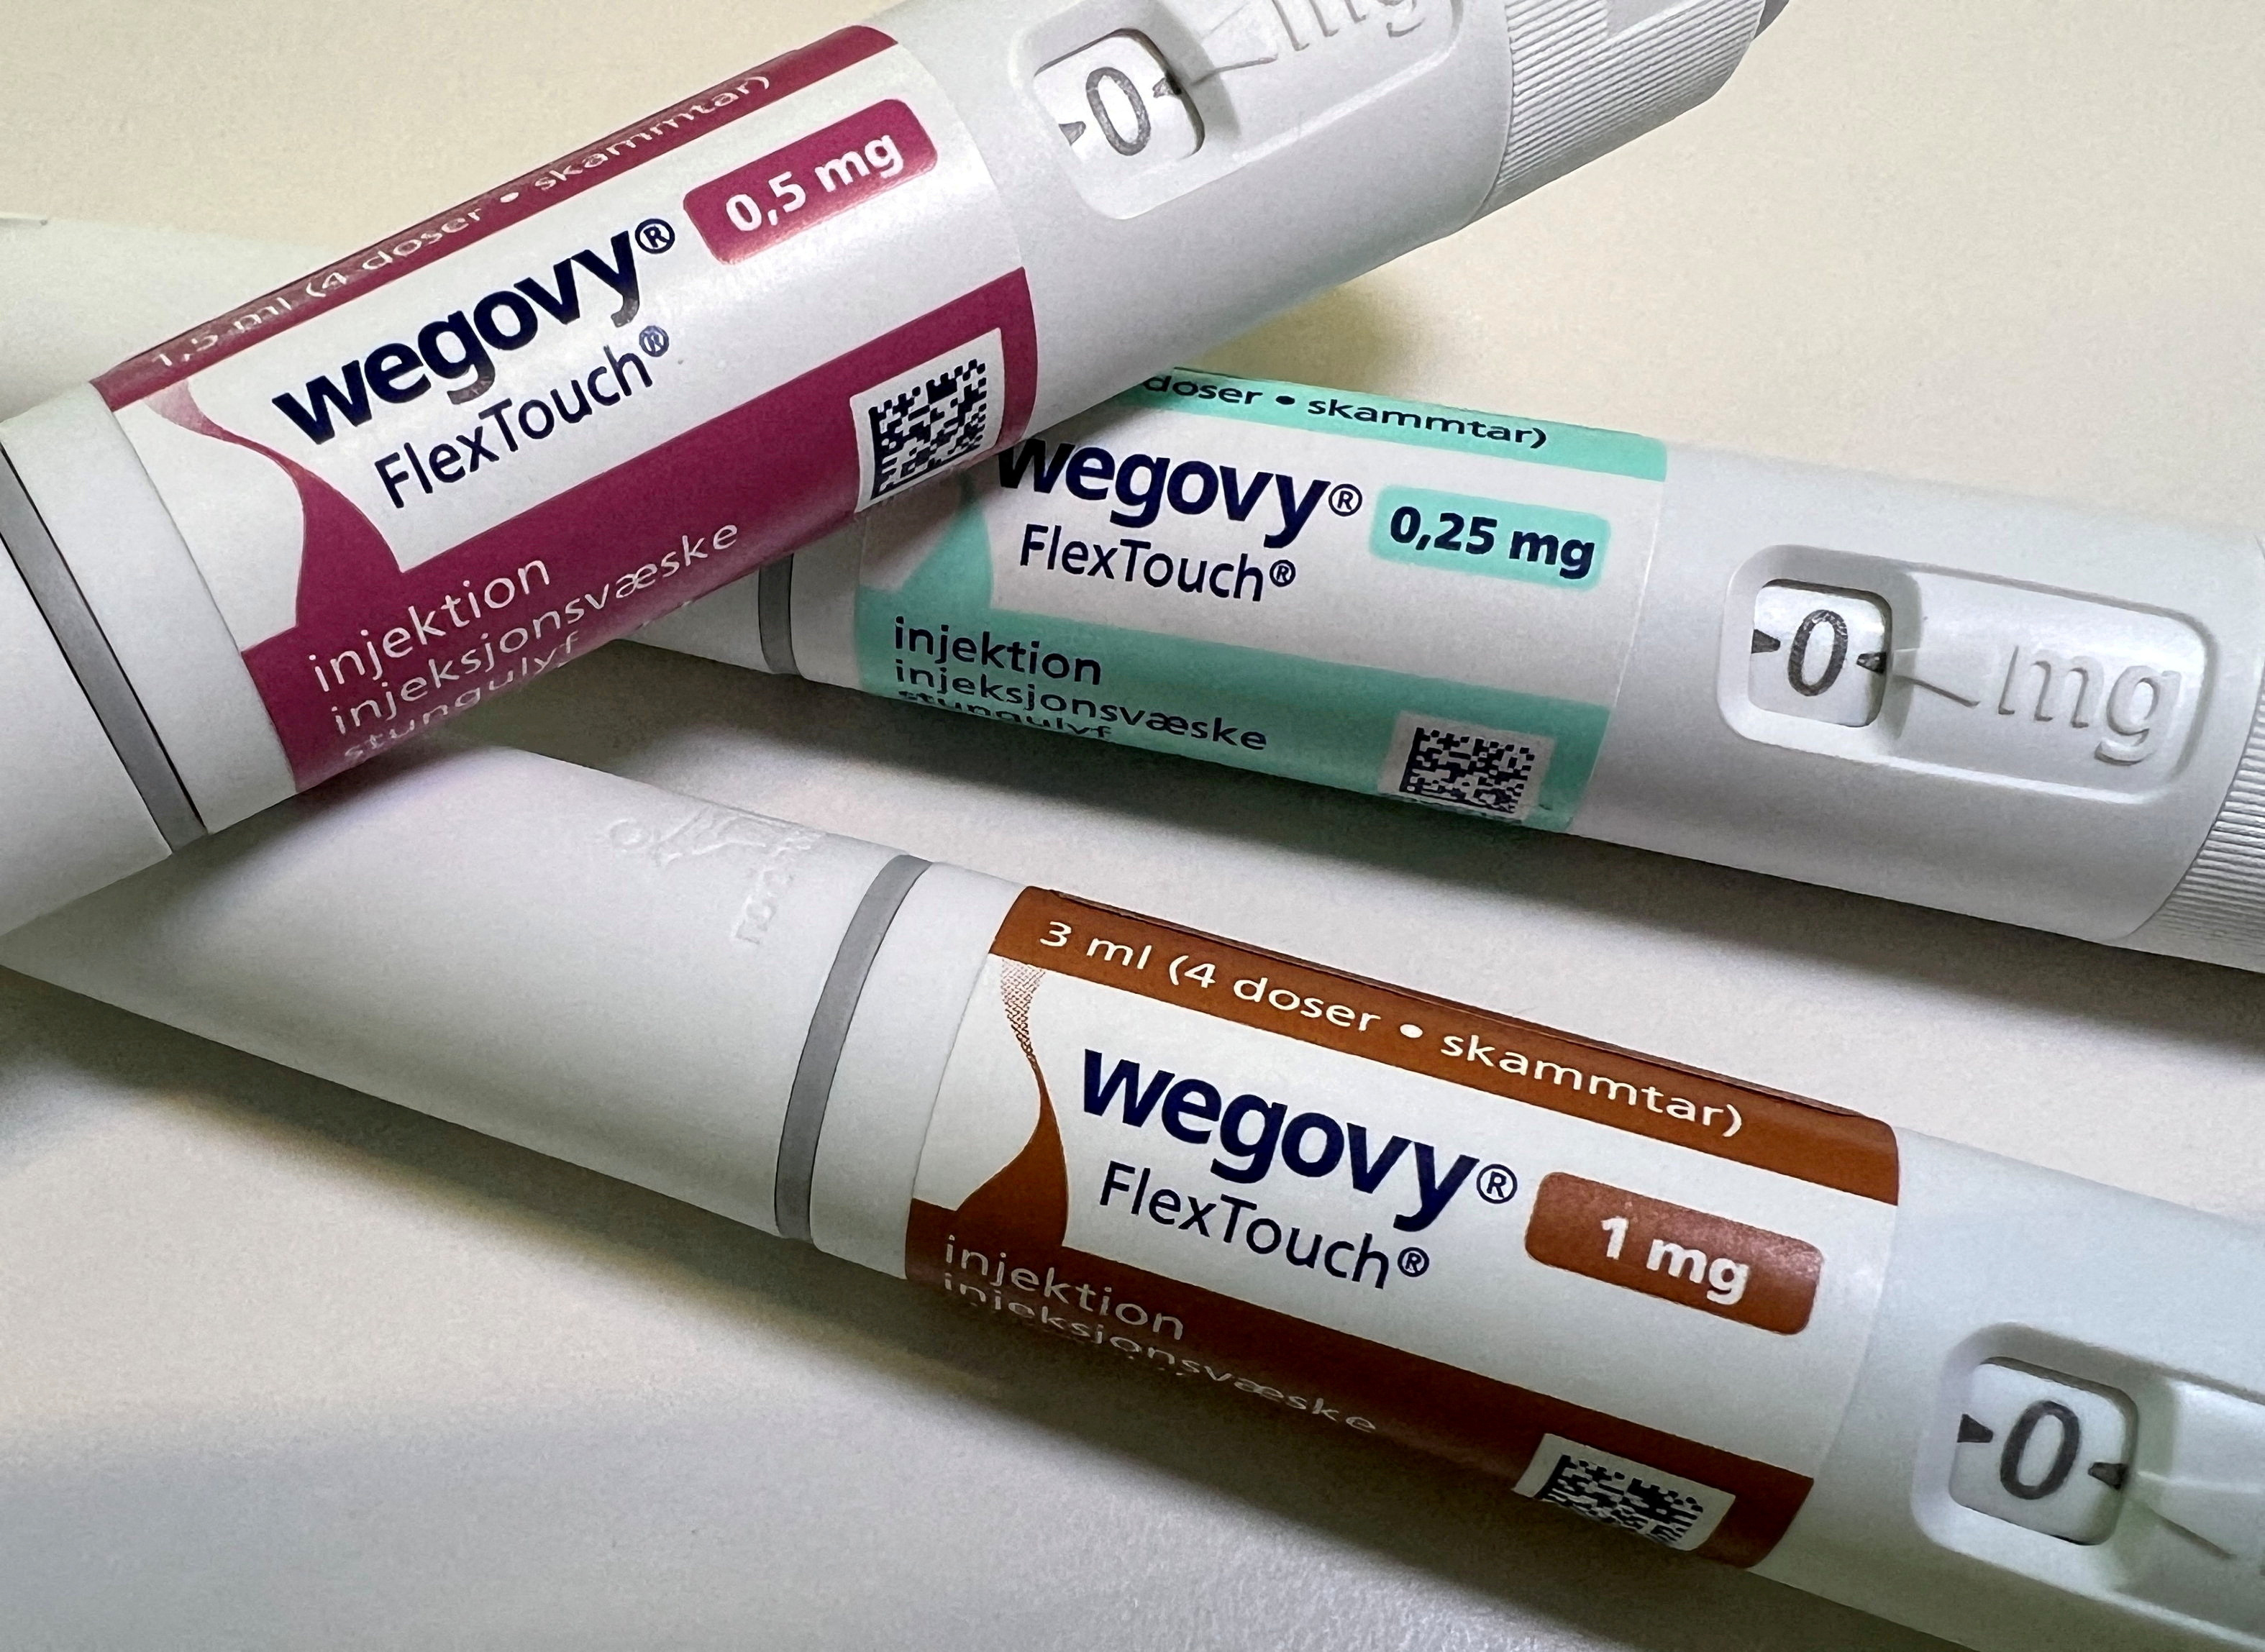 Wegovy ist eine einmal wöchentliche subkutane Injektion, die beim Abnehmen hilft